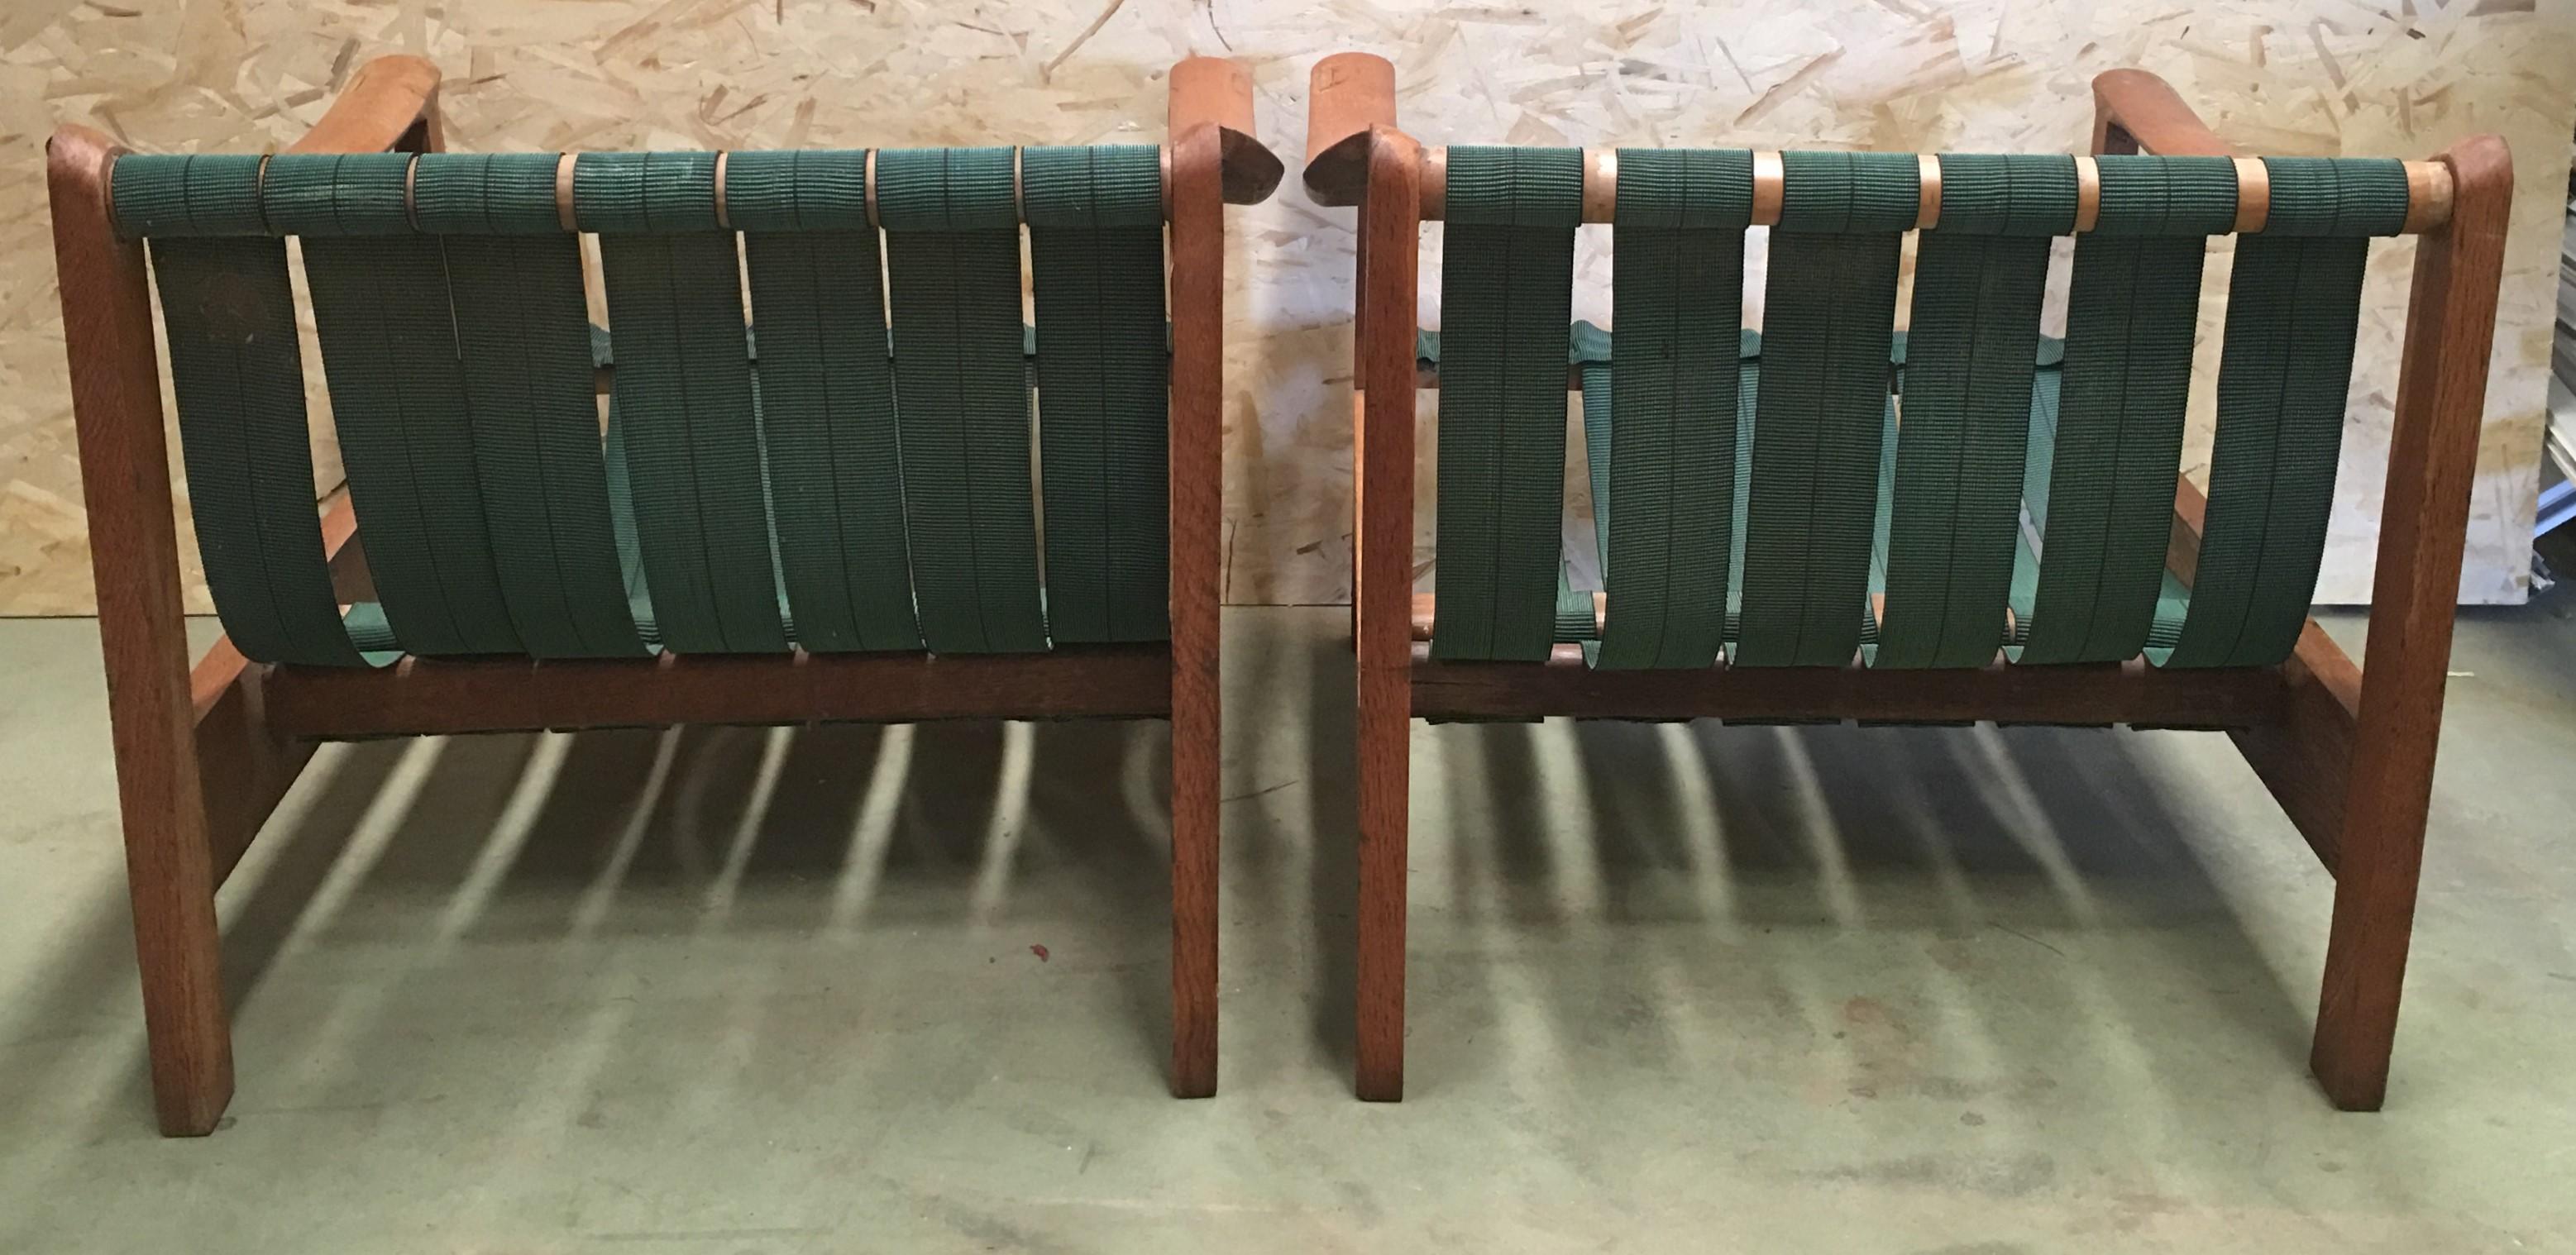 dänische Teakholzsessel aus dem 20. Jahrhundert mit Riemen und Kissen
Dies ist eine einzigartige dänische Sessel verfügt über einen stabilen Teakholzrahmen, Riemen zurück und Sitz, sehr bequemes Sitzen. Das Vintage-Teakholz-Finish, das stilvolle